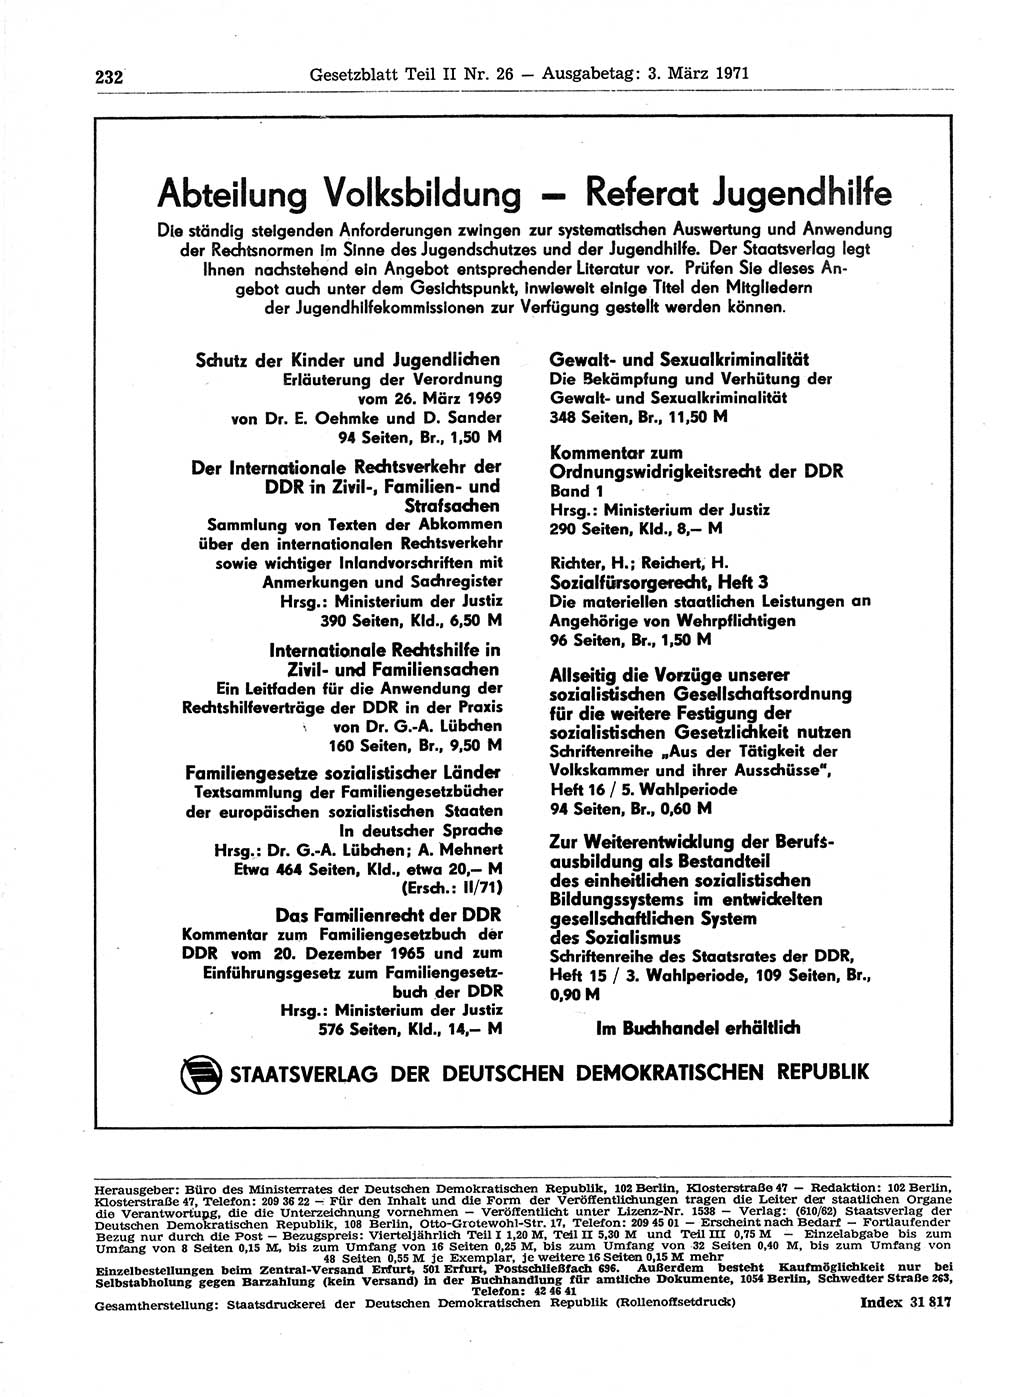 Gesetzblatt (GBl.) der Deutschen Demokratischen Republik (DDR) Teil ⅠⅠ 1971, Seite 232 (GBl. DDR ⅠⅠ 1971, S. 232)